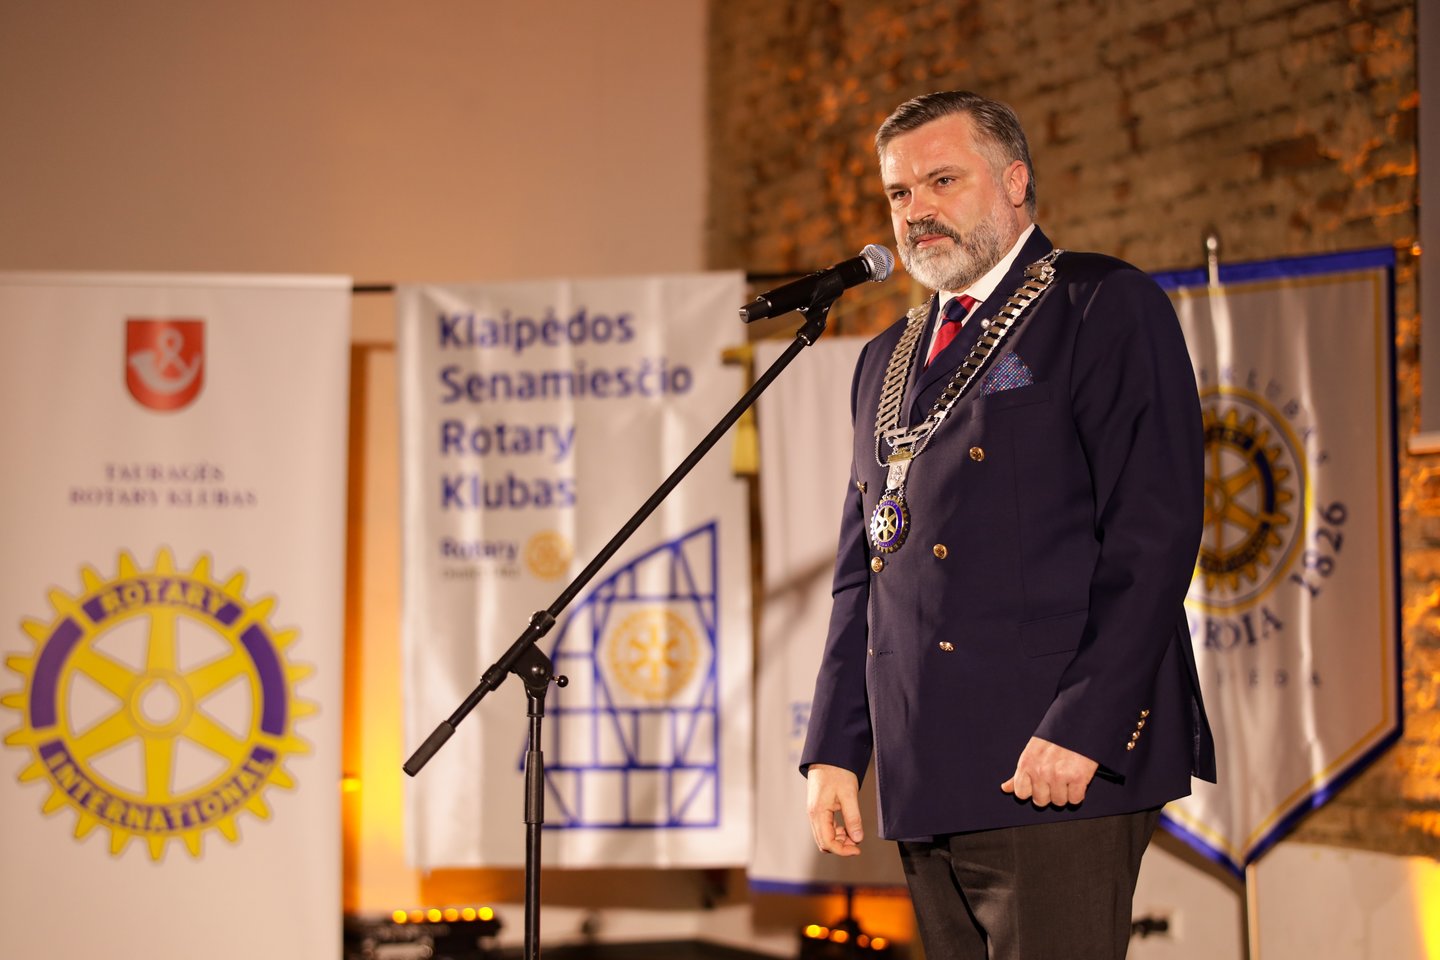 Liietuvos Rotary apygardos valdytojas Evaldas Vaineikis.<br>V.Kirklio nuotr. 